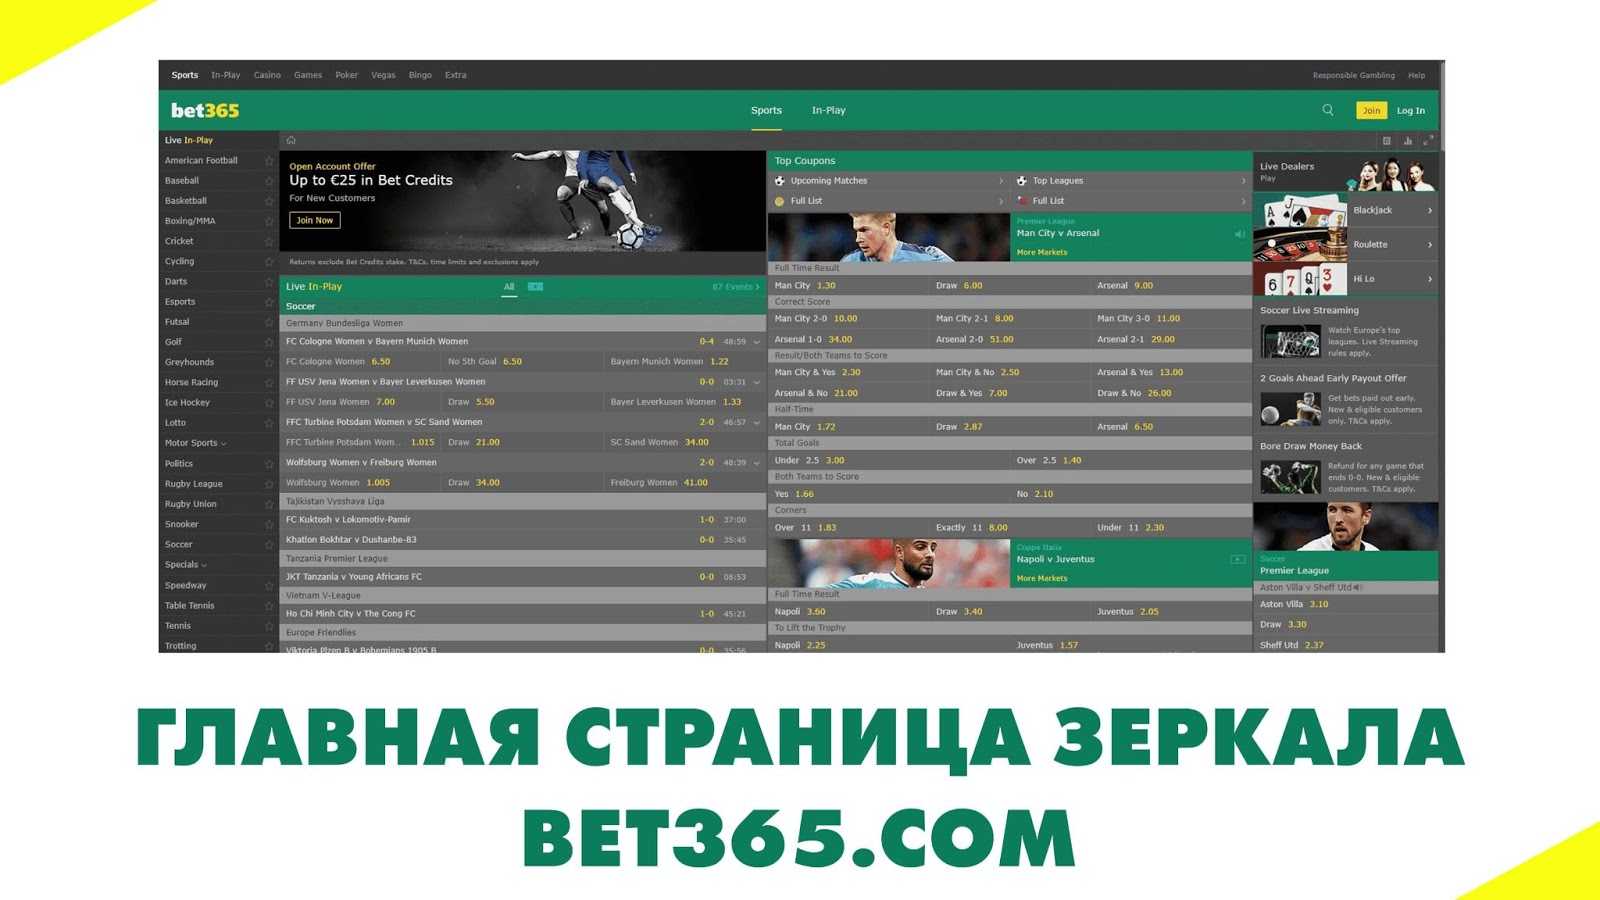 Внешний вид сайта-зеркала Bet365 на русском языке, абсолютно не отличается от дизайна официального сайта